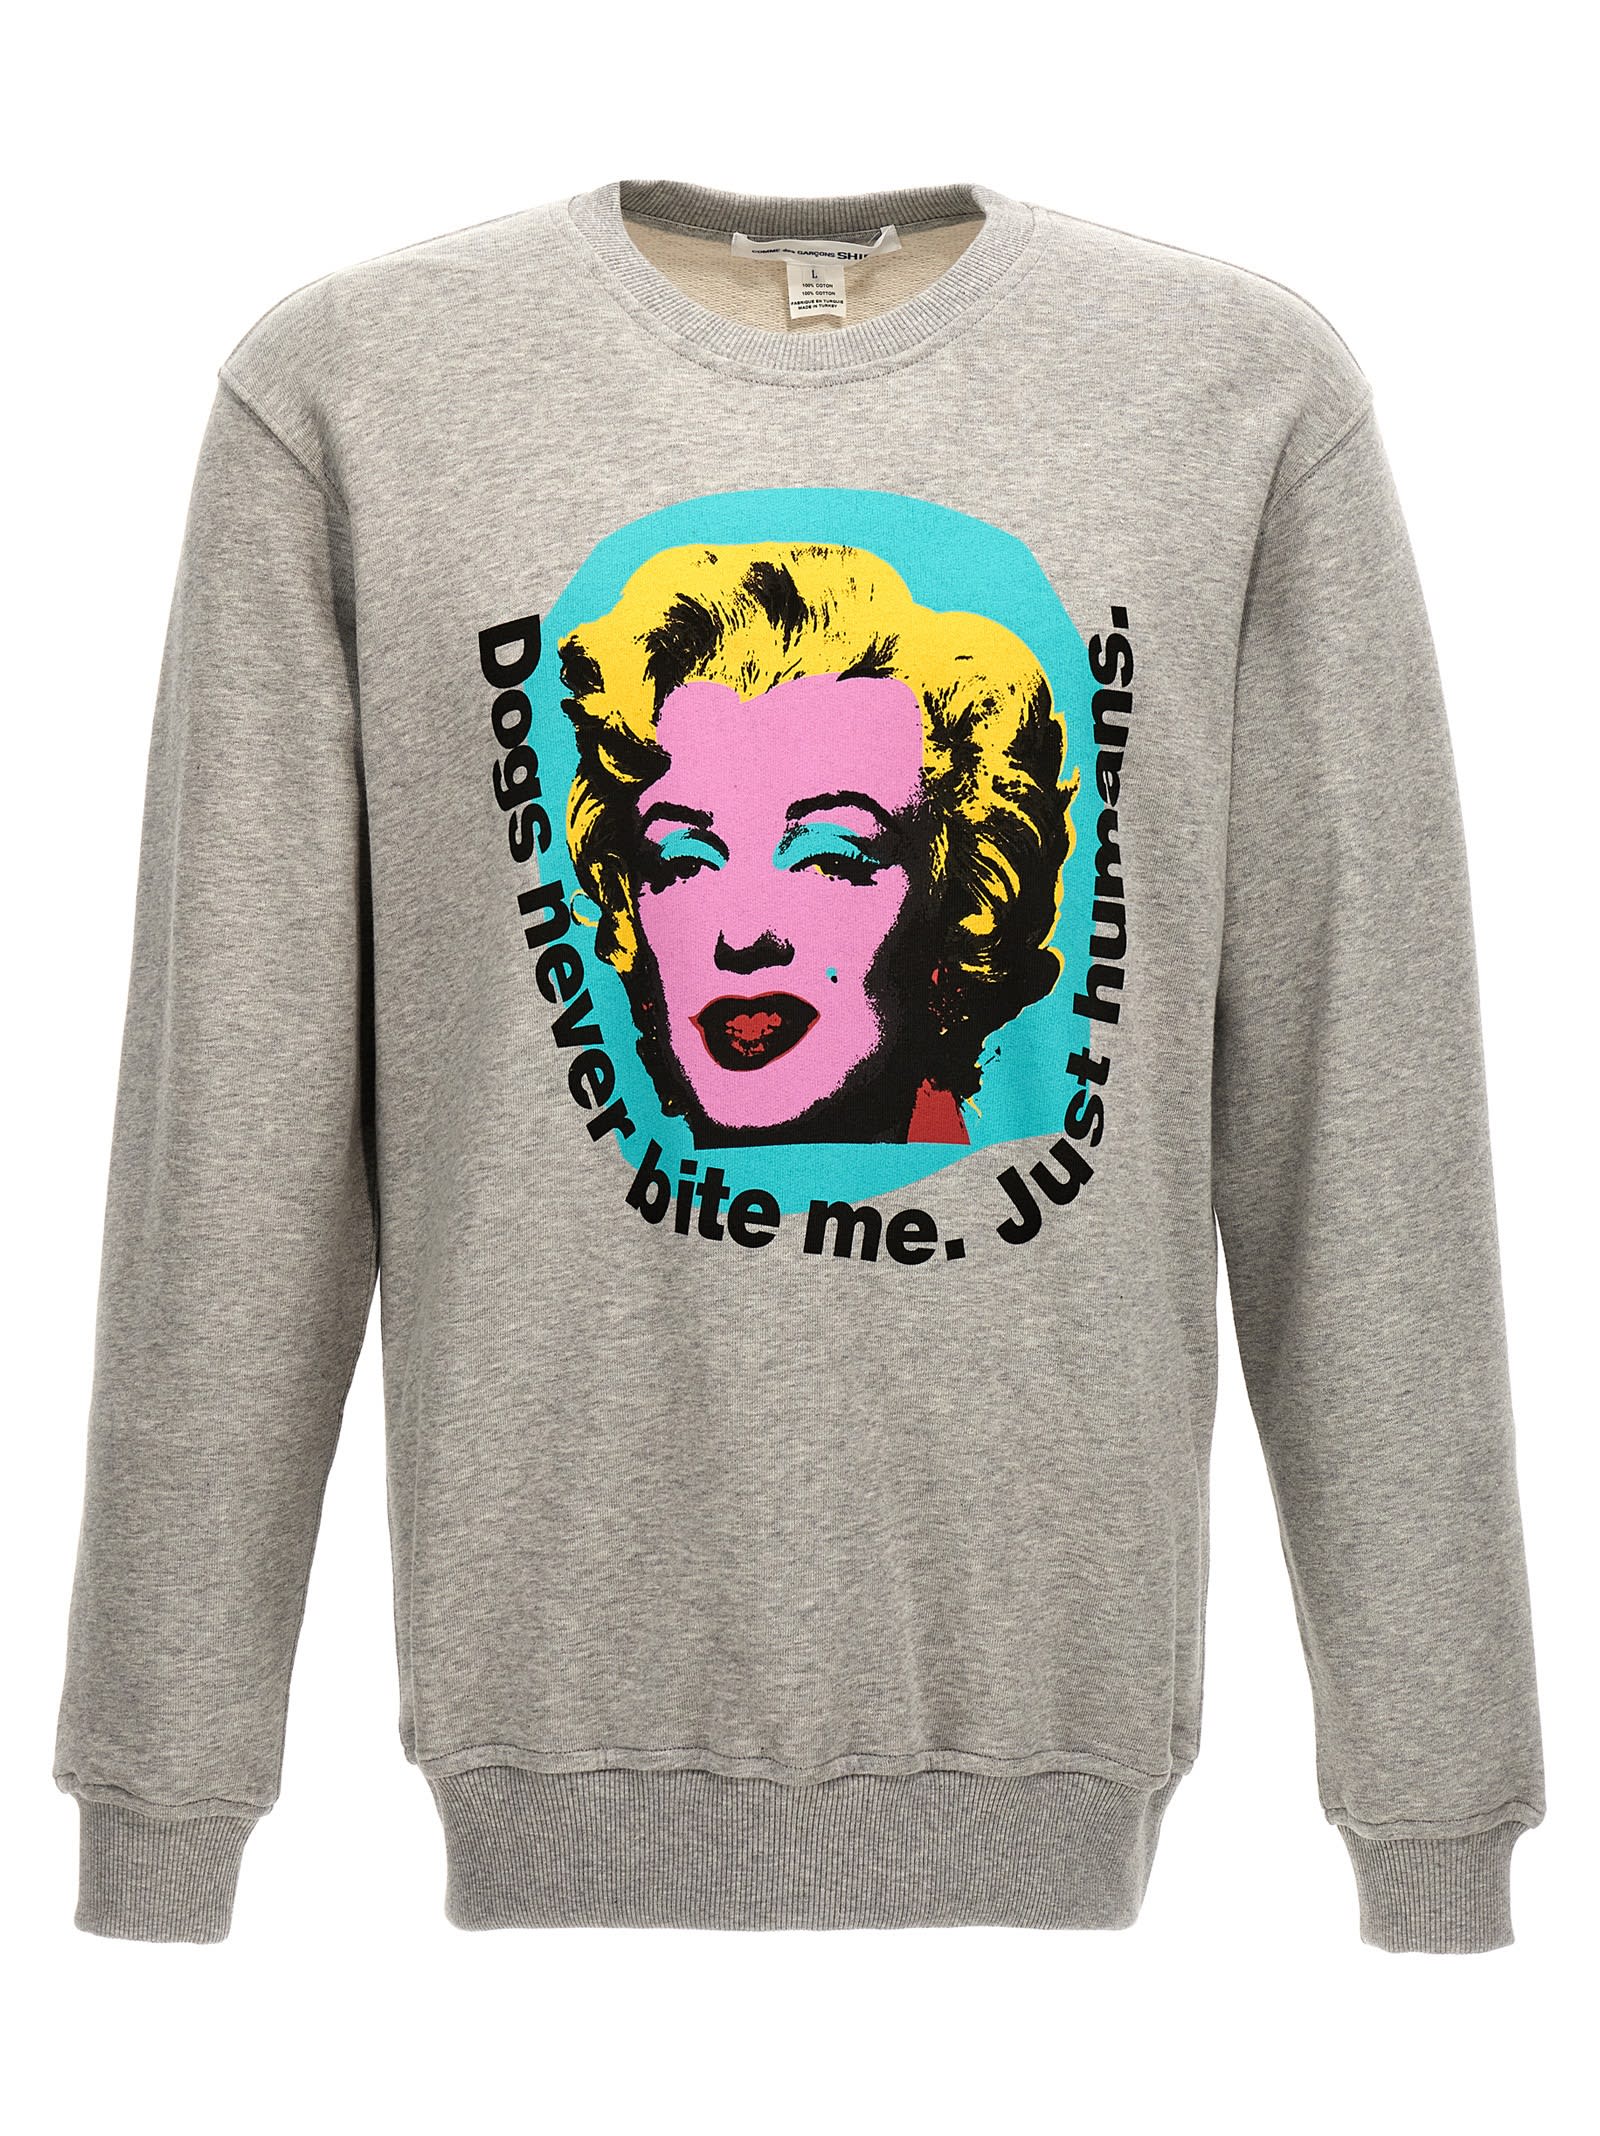 andy Warhol Sweatshirt